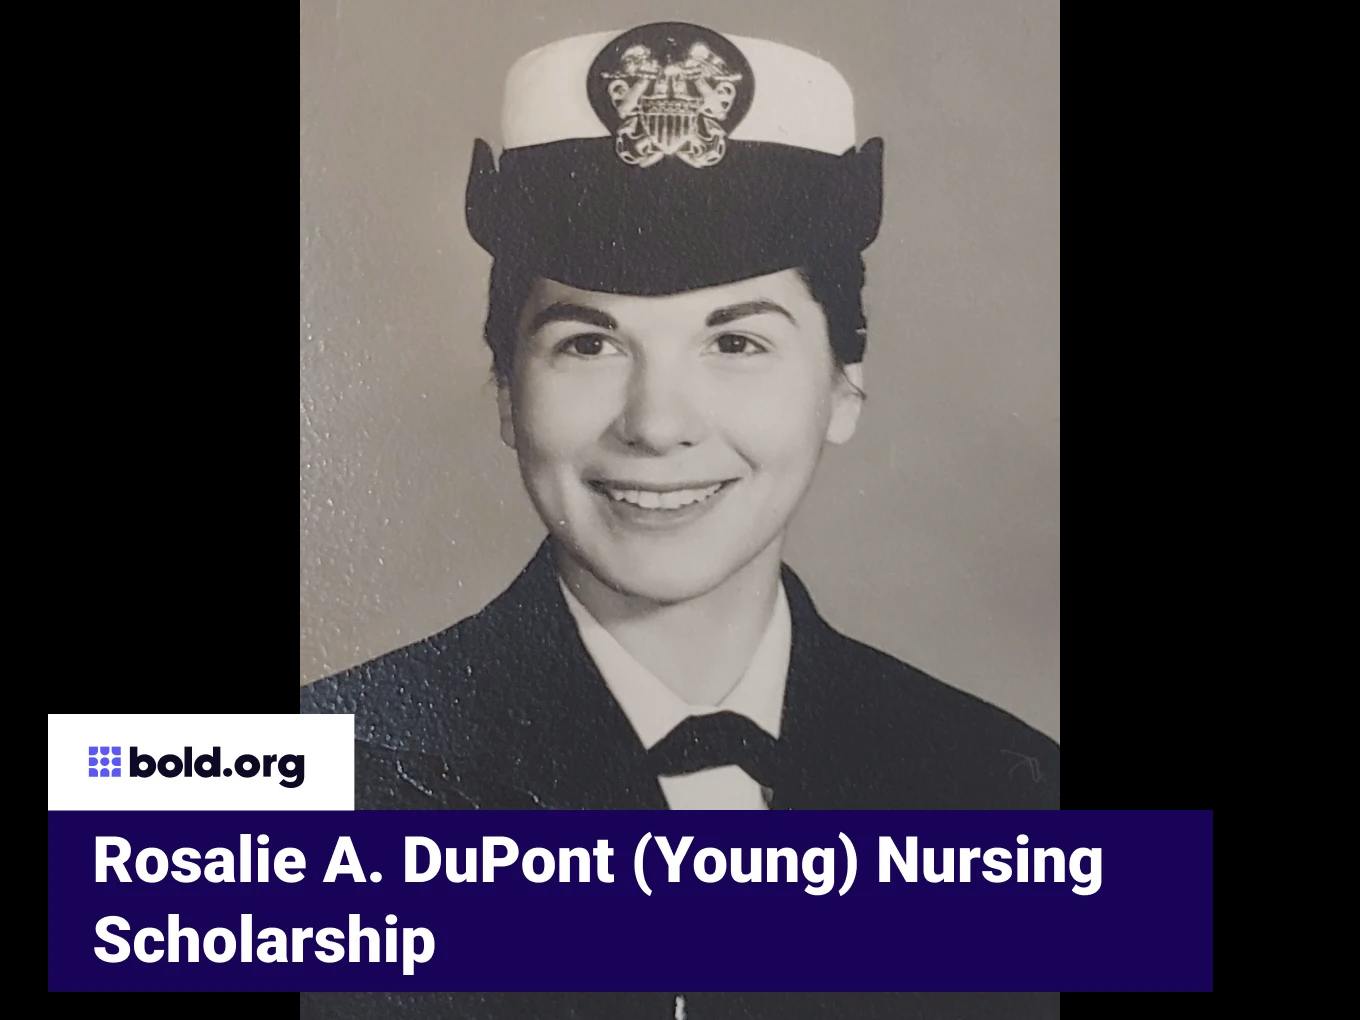 Rosalie A. DuPont (Young) Nursing Scholarship